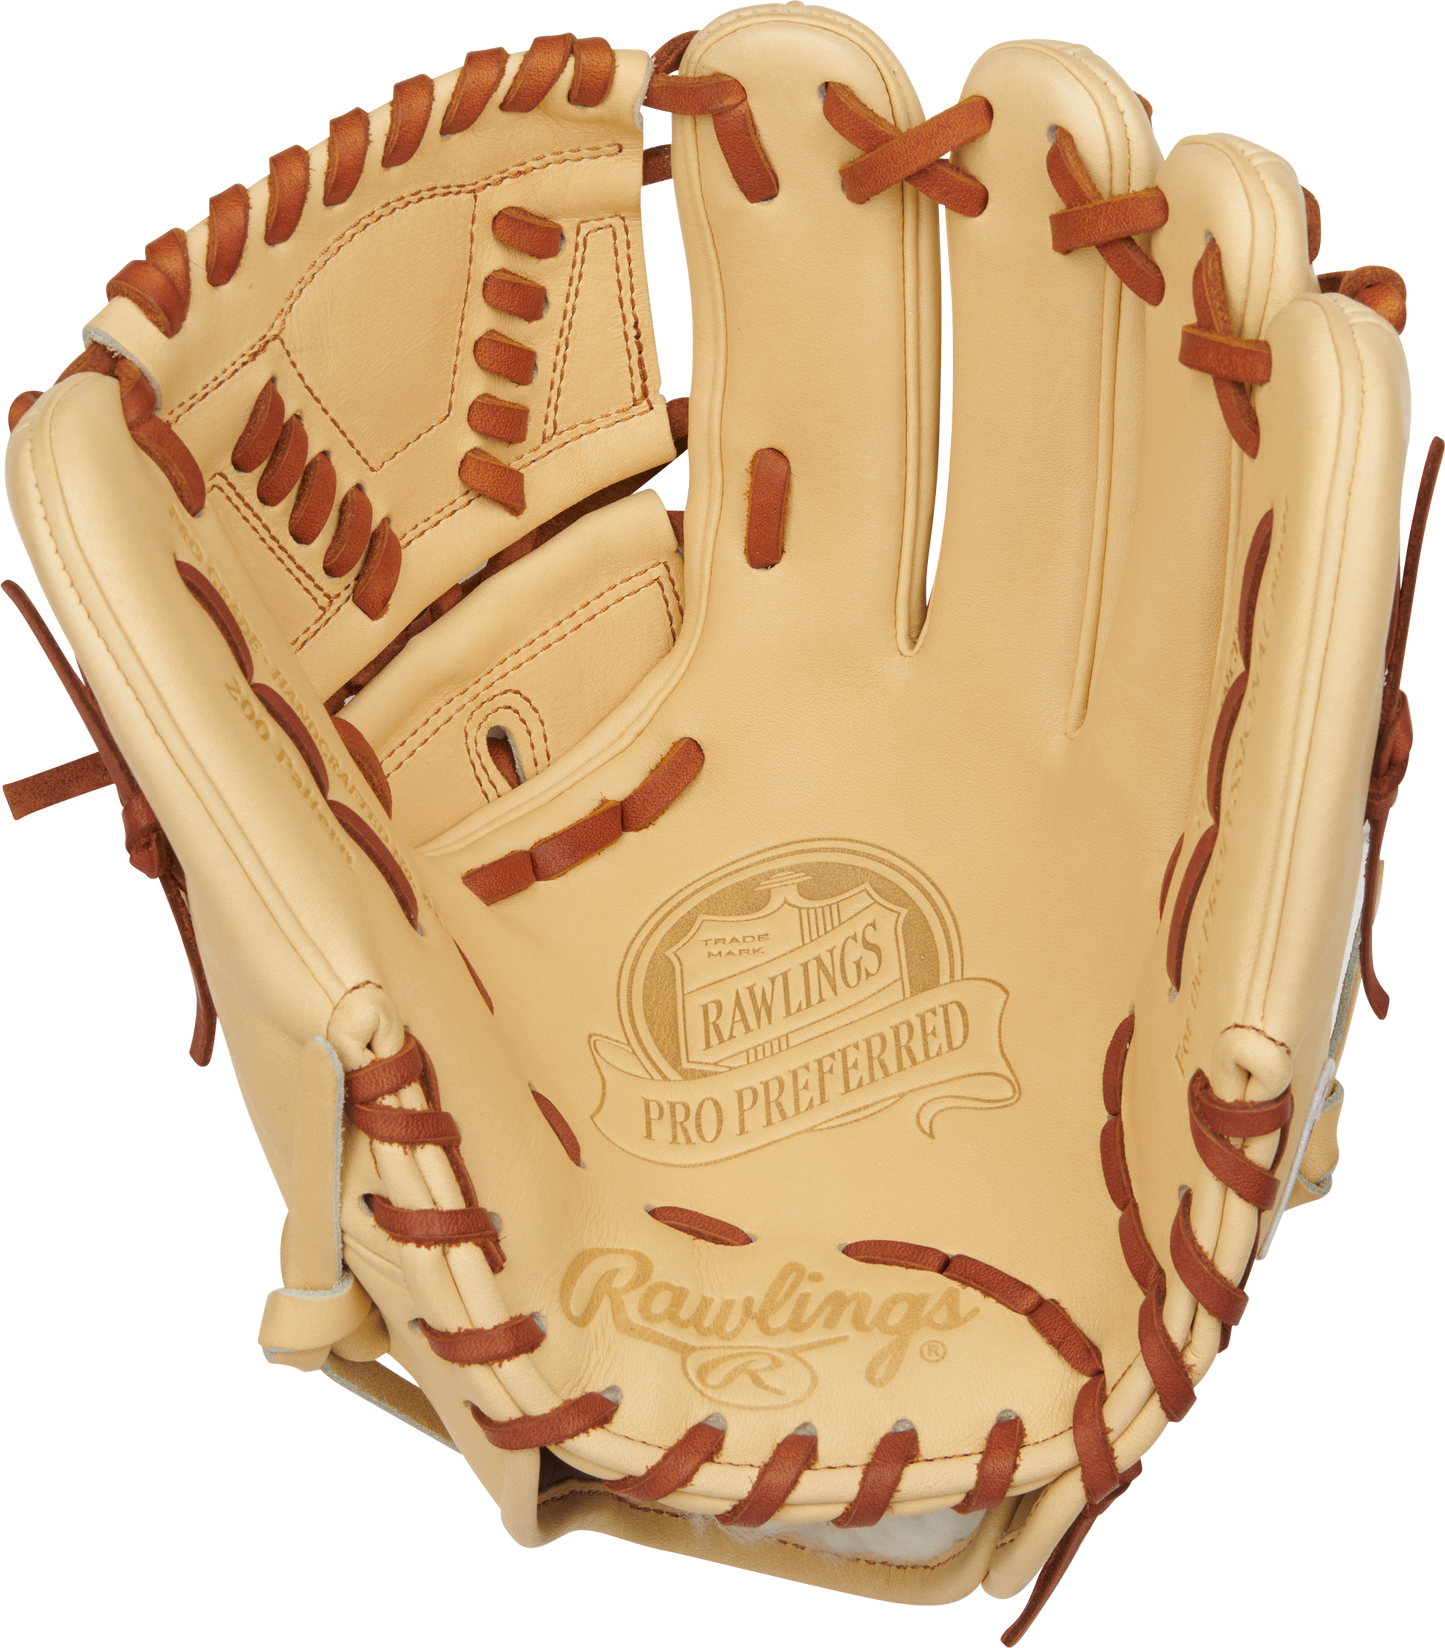 Pro Preferred 11.75 in Baseball Glove